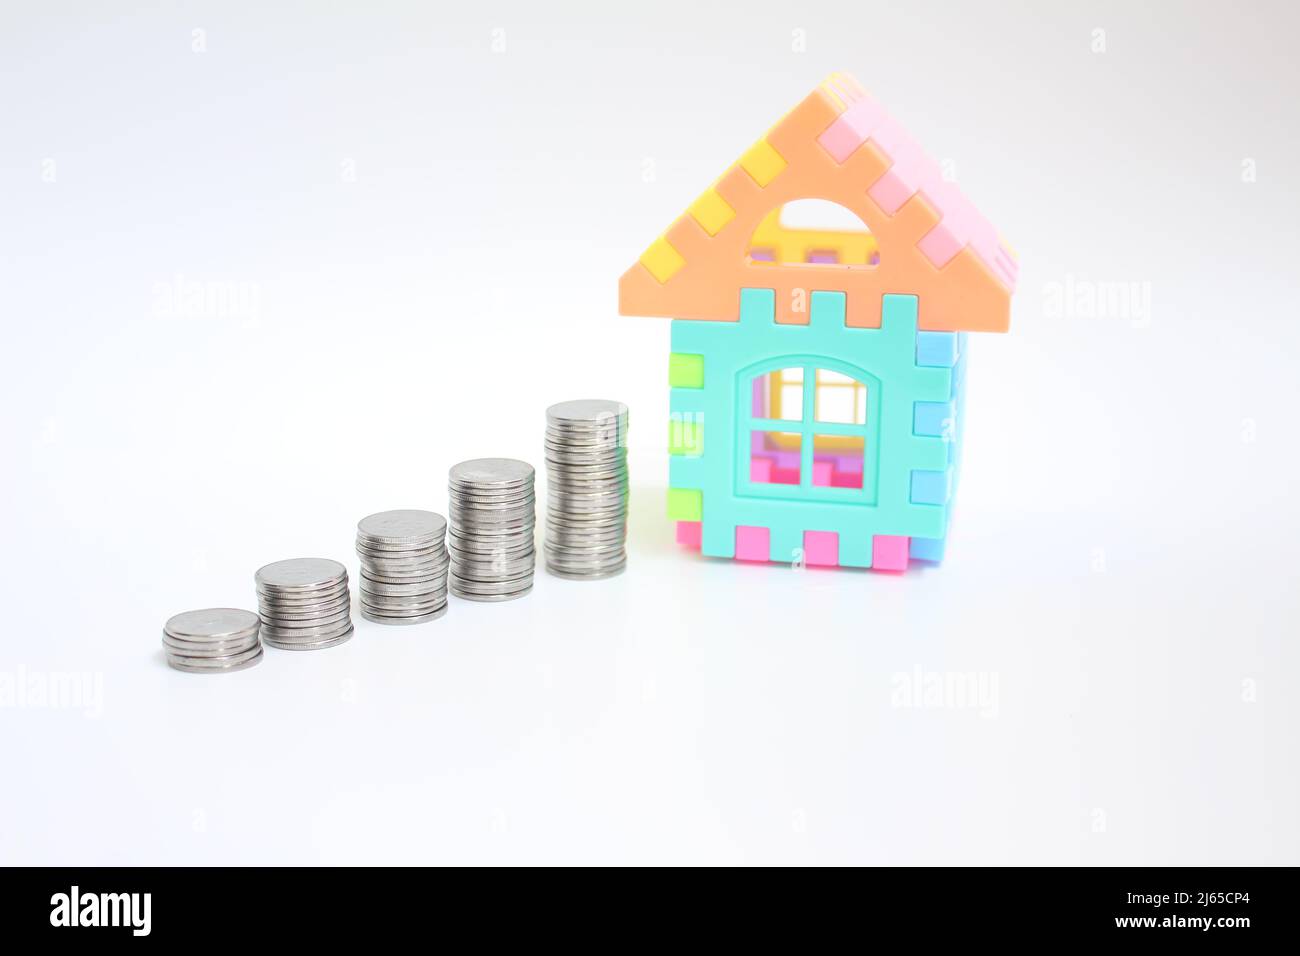 Münzen Geld und ein Haus zeigen, dass Planung, Sparen und Ausgaben wichtig sind, bevor sie Entscheidungen treffen. Geschäfts- und Versicherungskonzept. Stockfoto